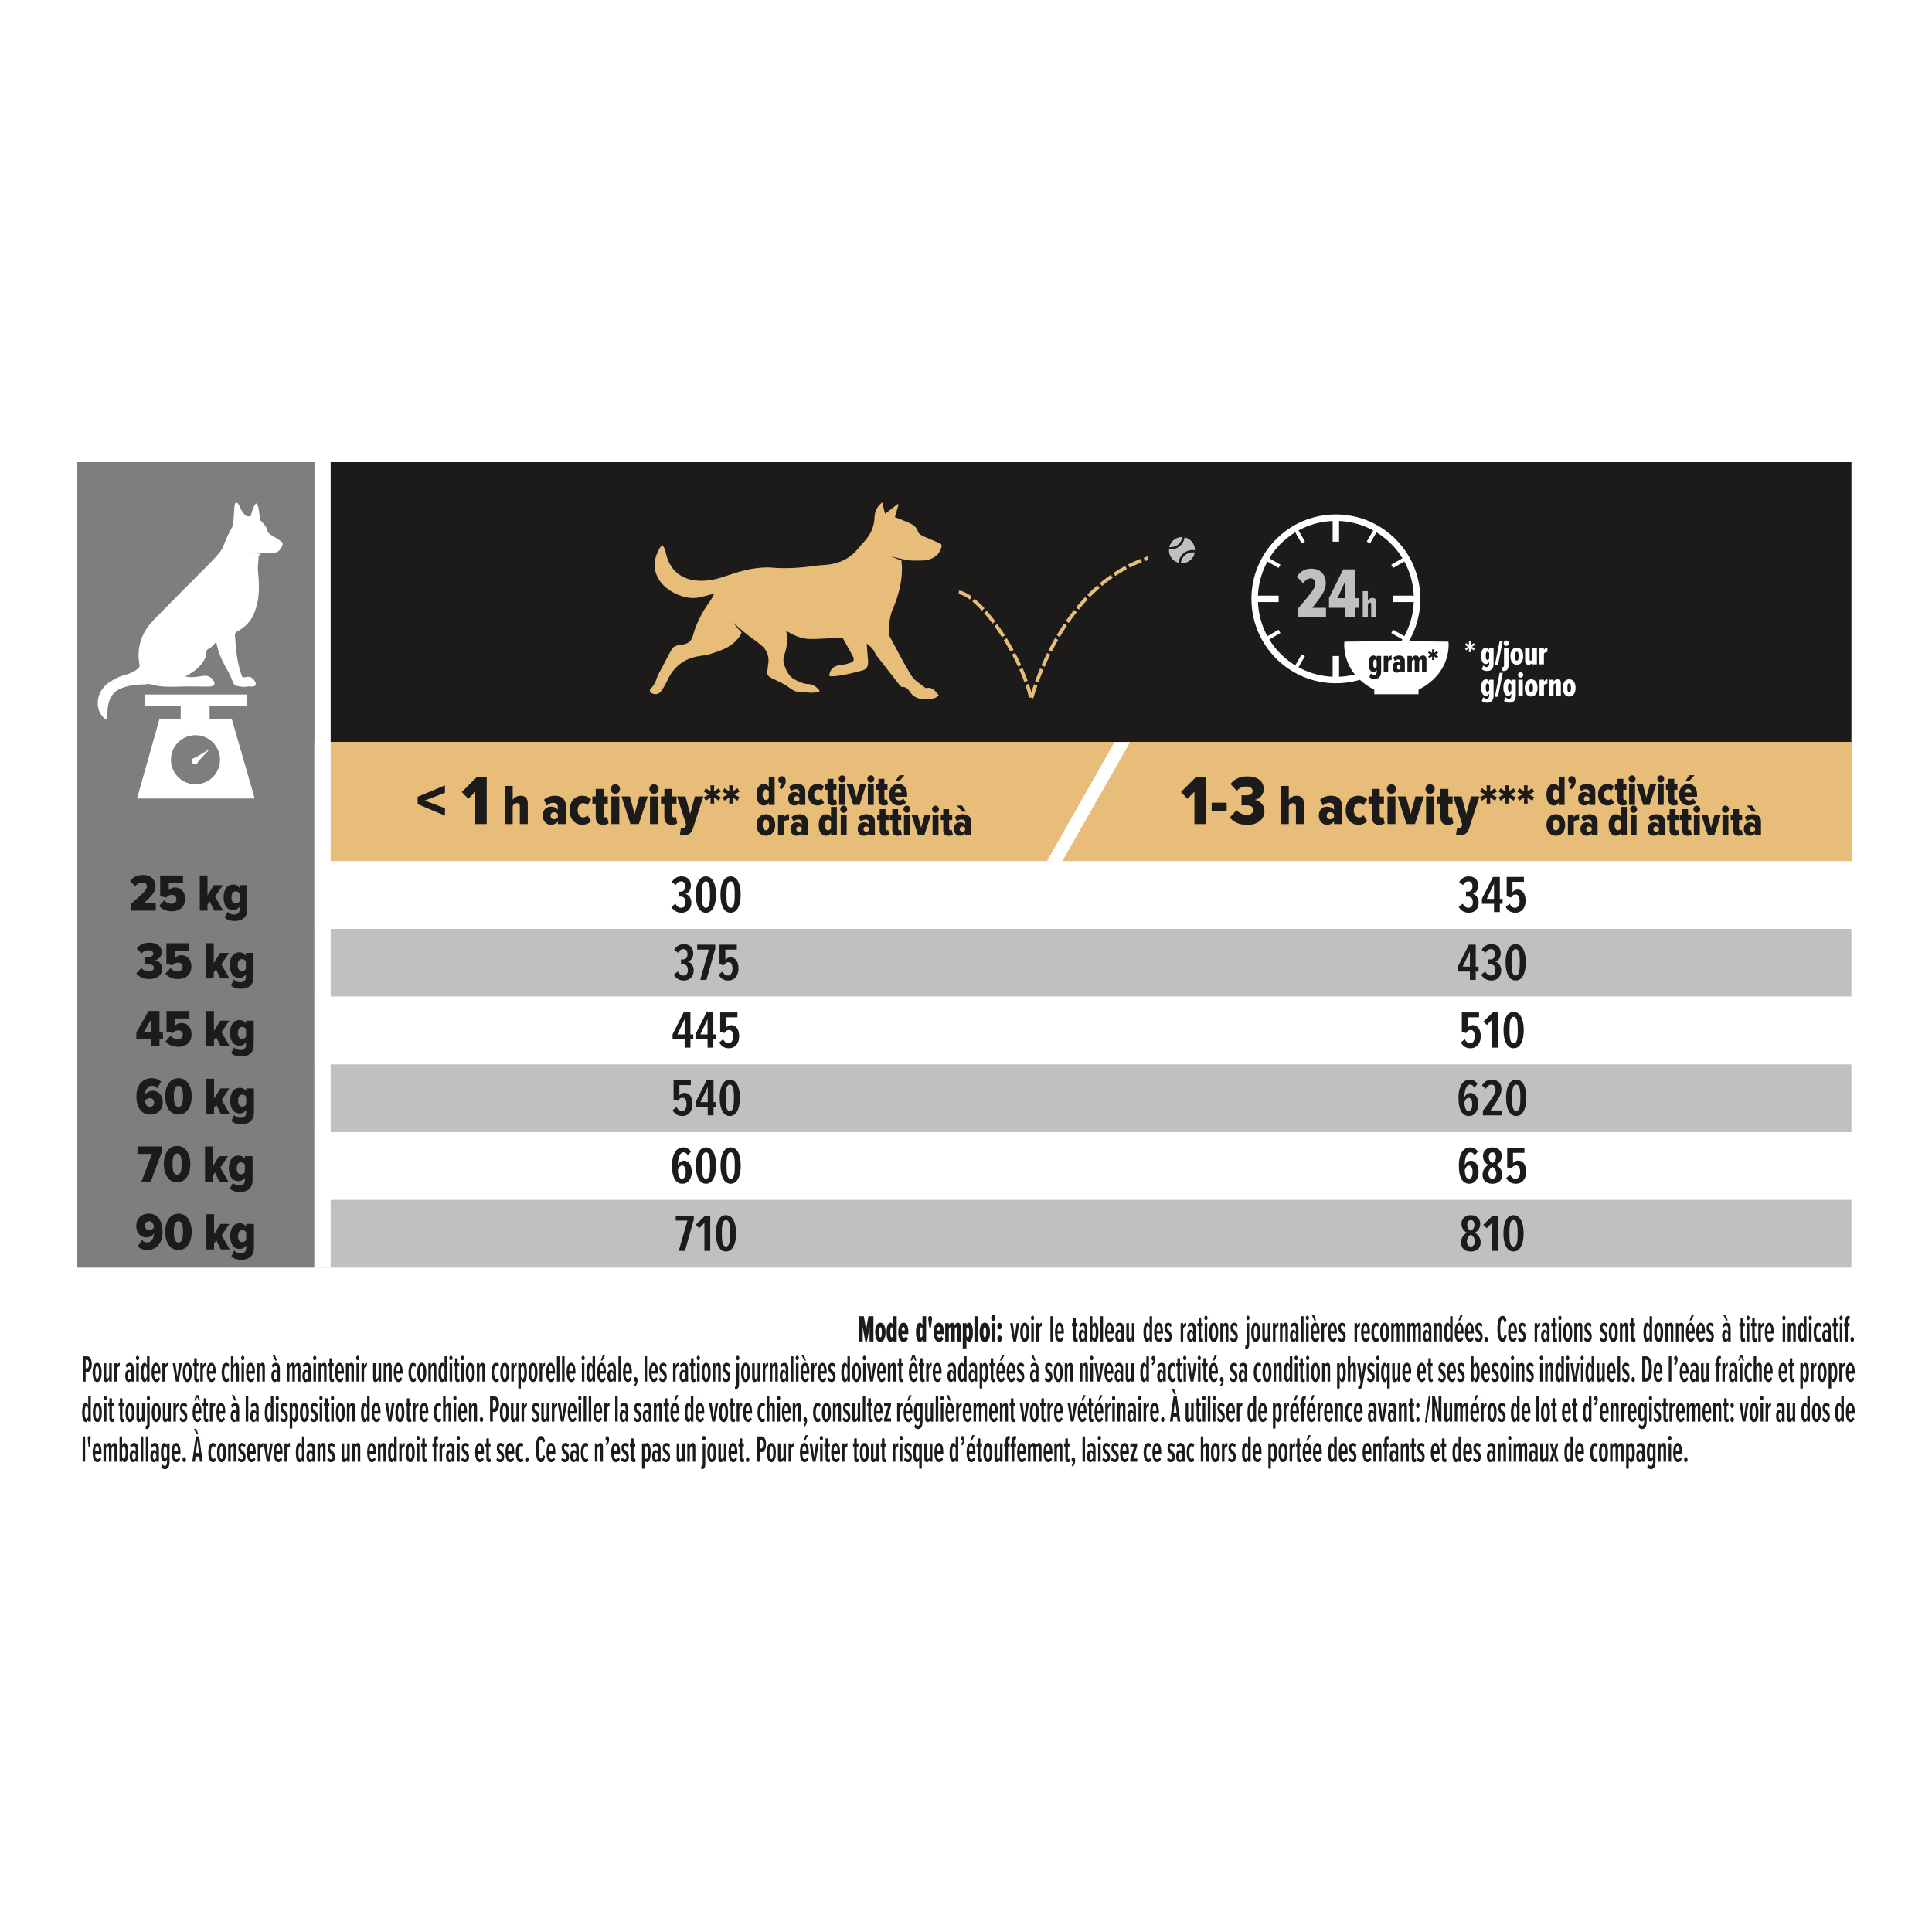 Hondenvoer Sensitive Digestion (Adult / Groot / Atletisch) Lam 14kg